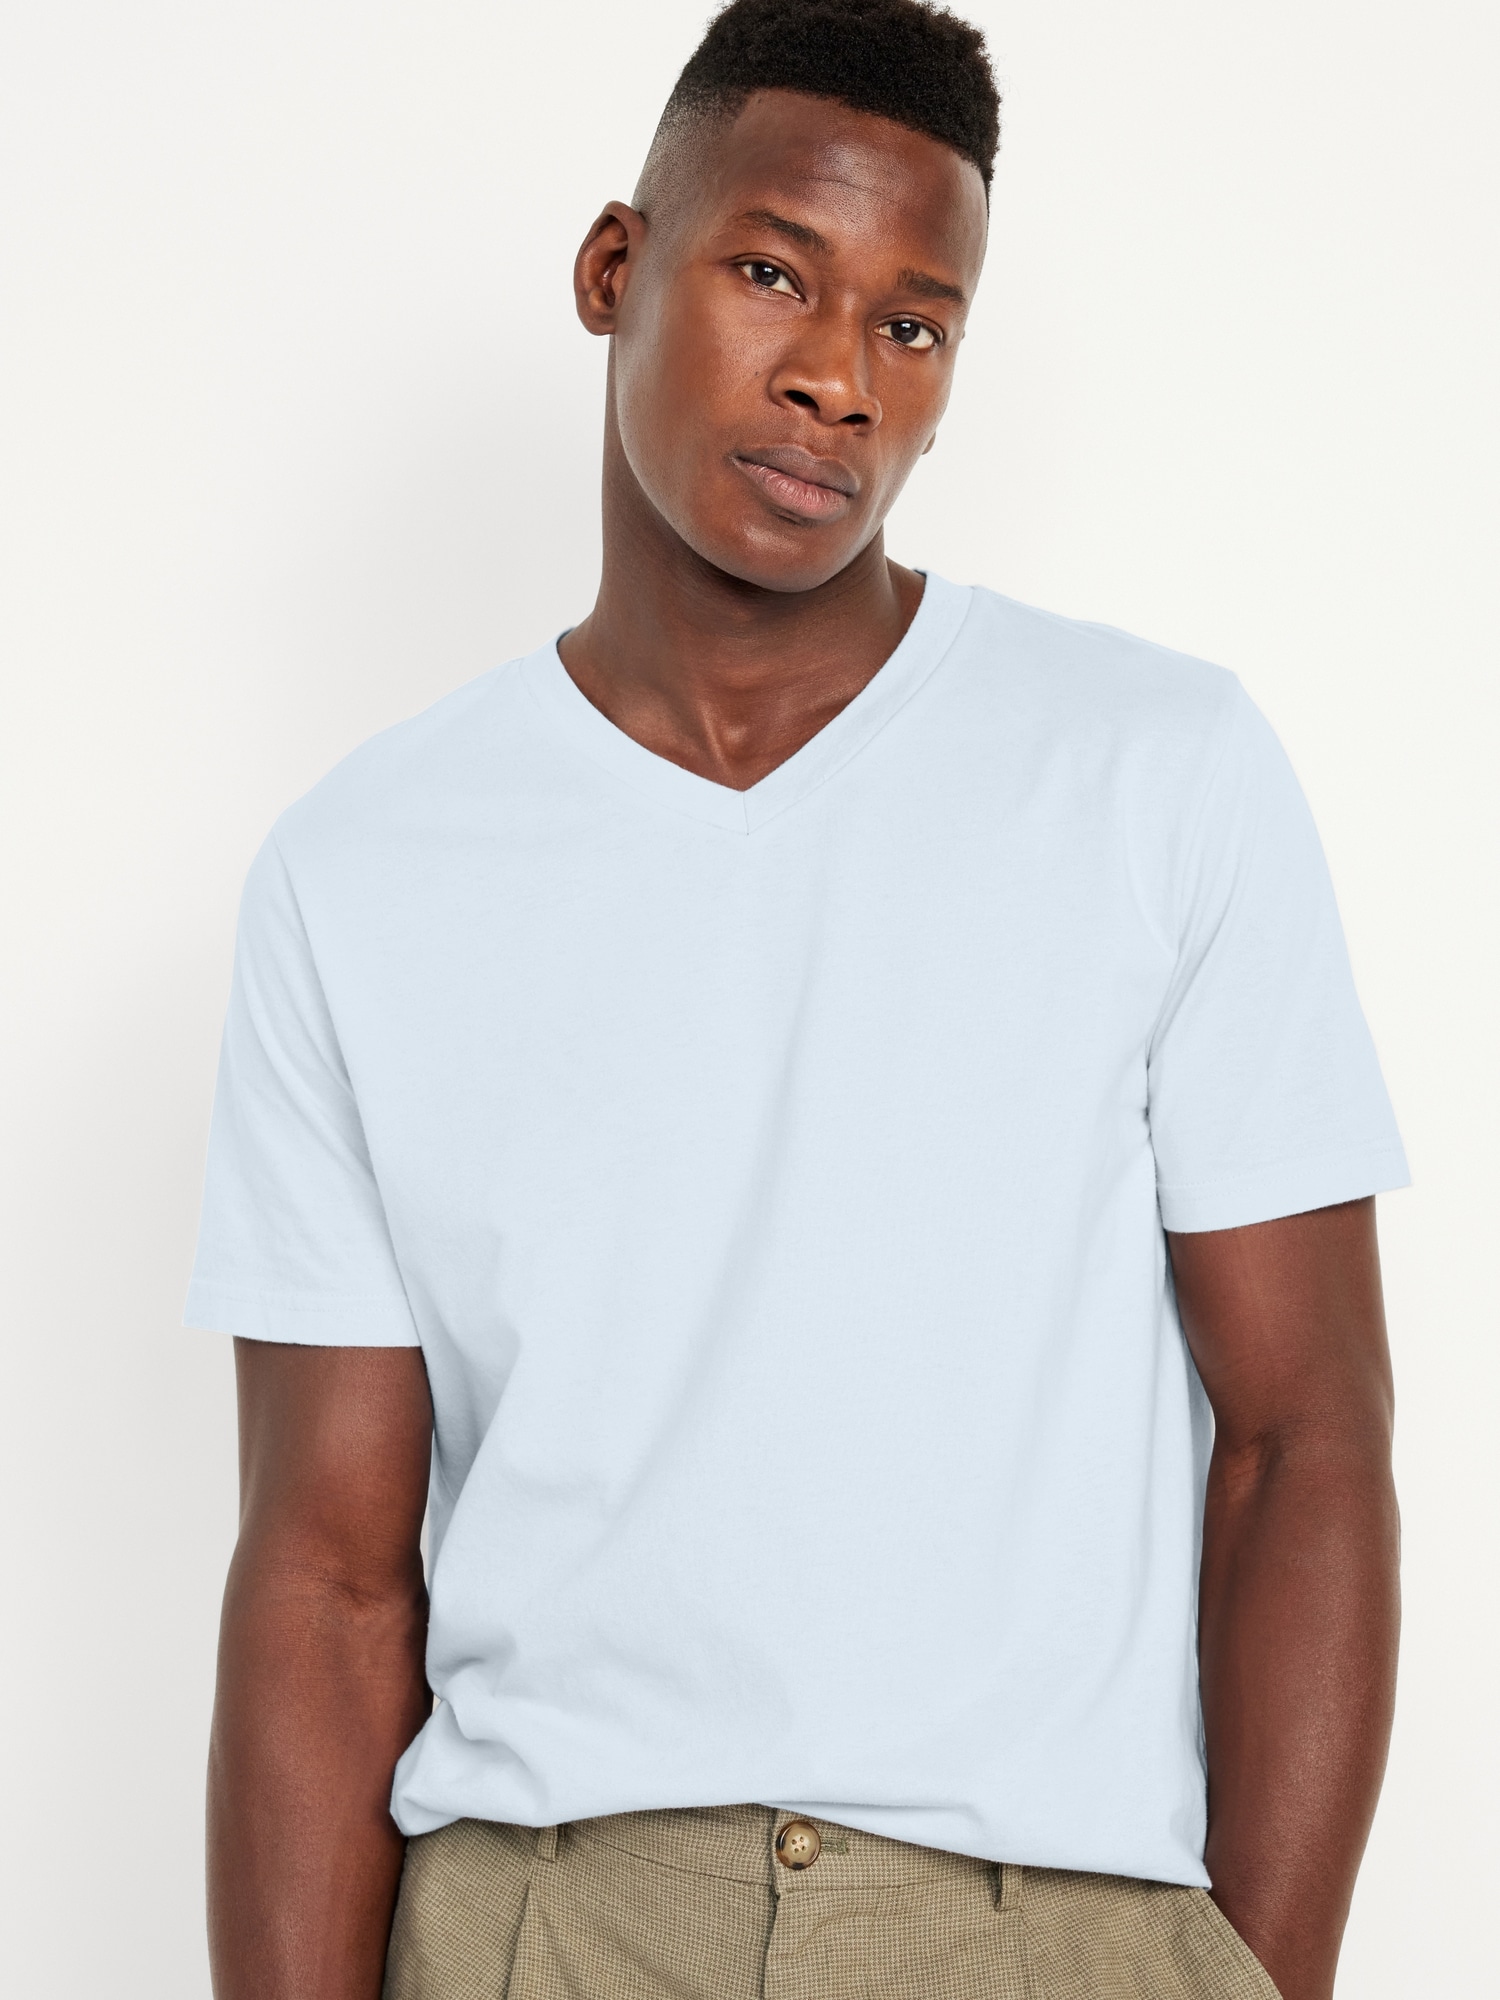 The V-Neck T-Shirt - White